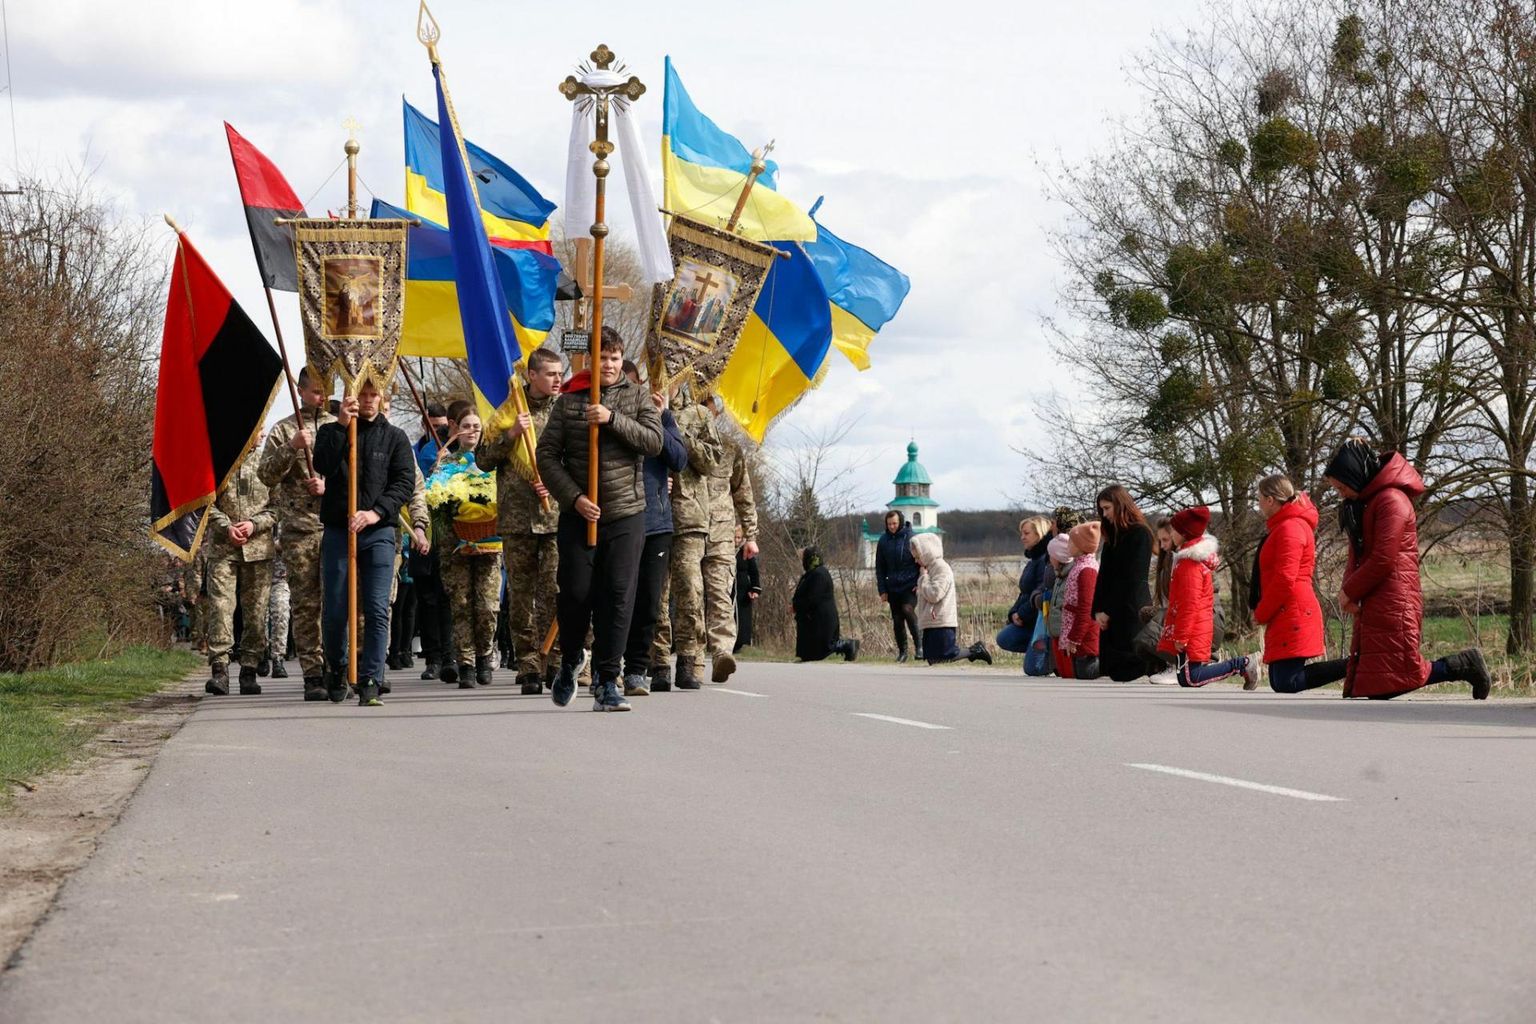 Naised ja lapsed põlvitavad tee ääres, kui langenud sõduri Vladislav Voitovõtši matuserongkäik teel kirikusse neist möödub.